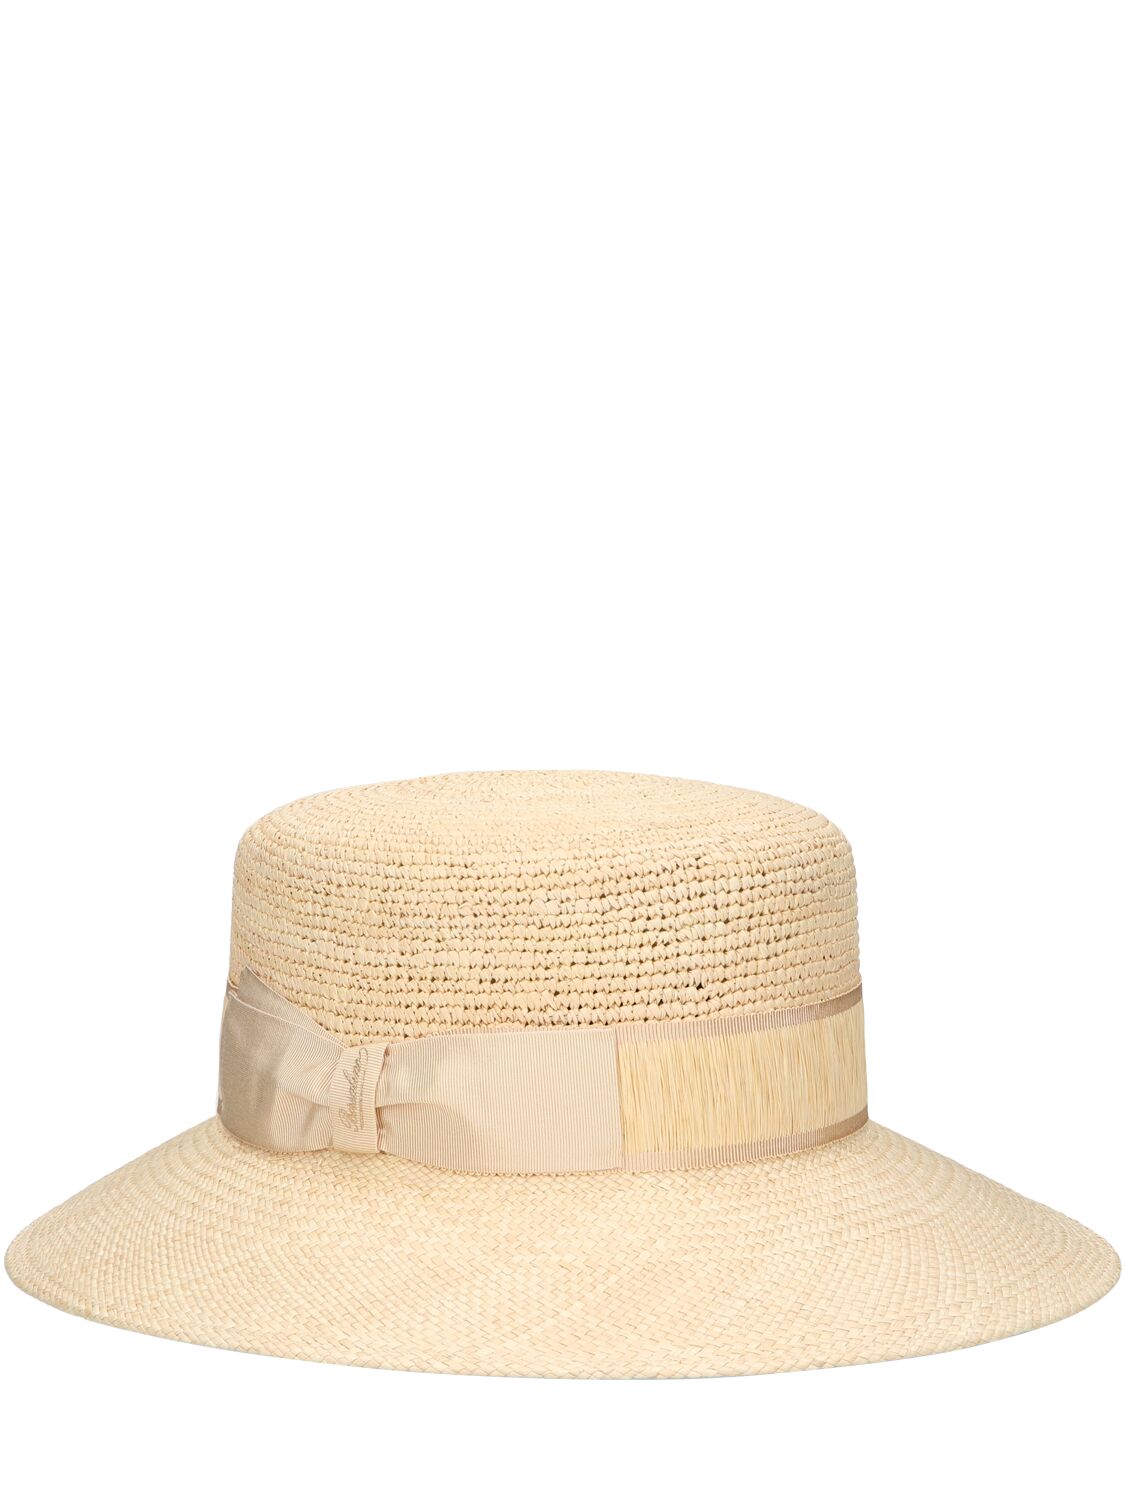 Borsalino Kris Semi-crochet Straw Panama Hat In White